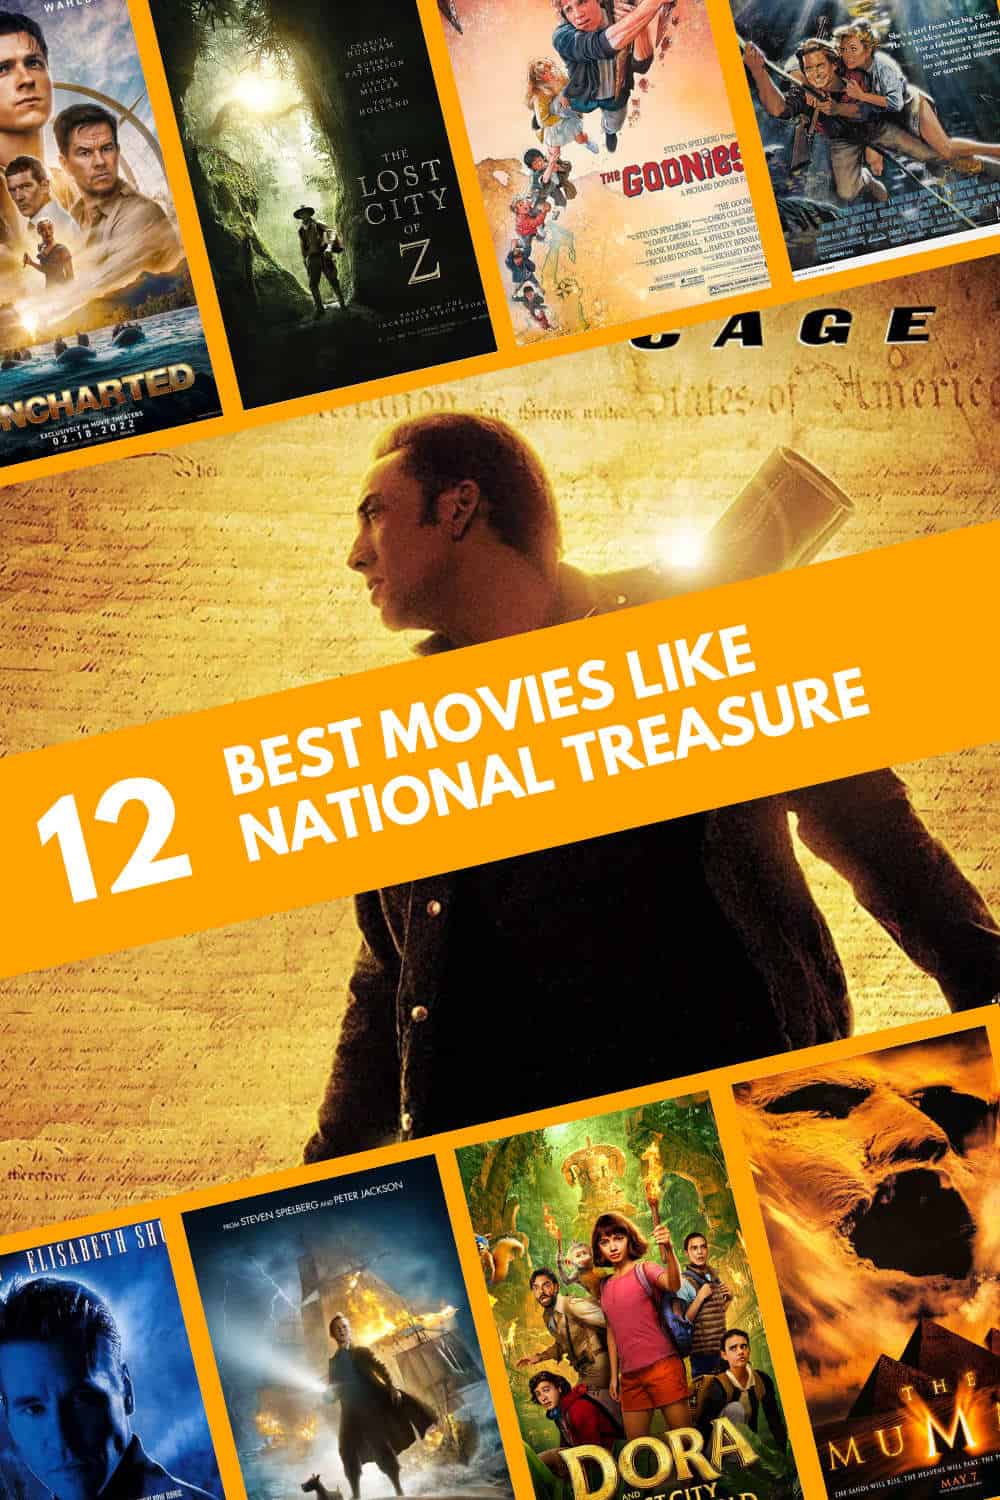 Movie Like National Treasure